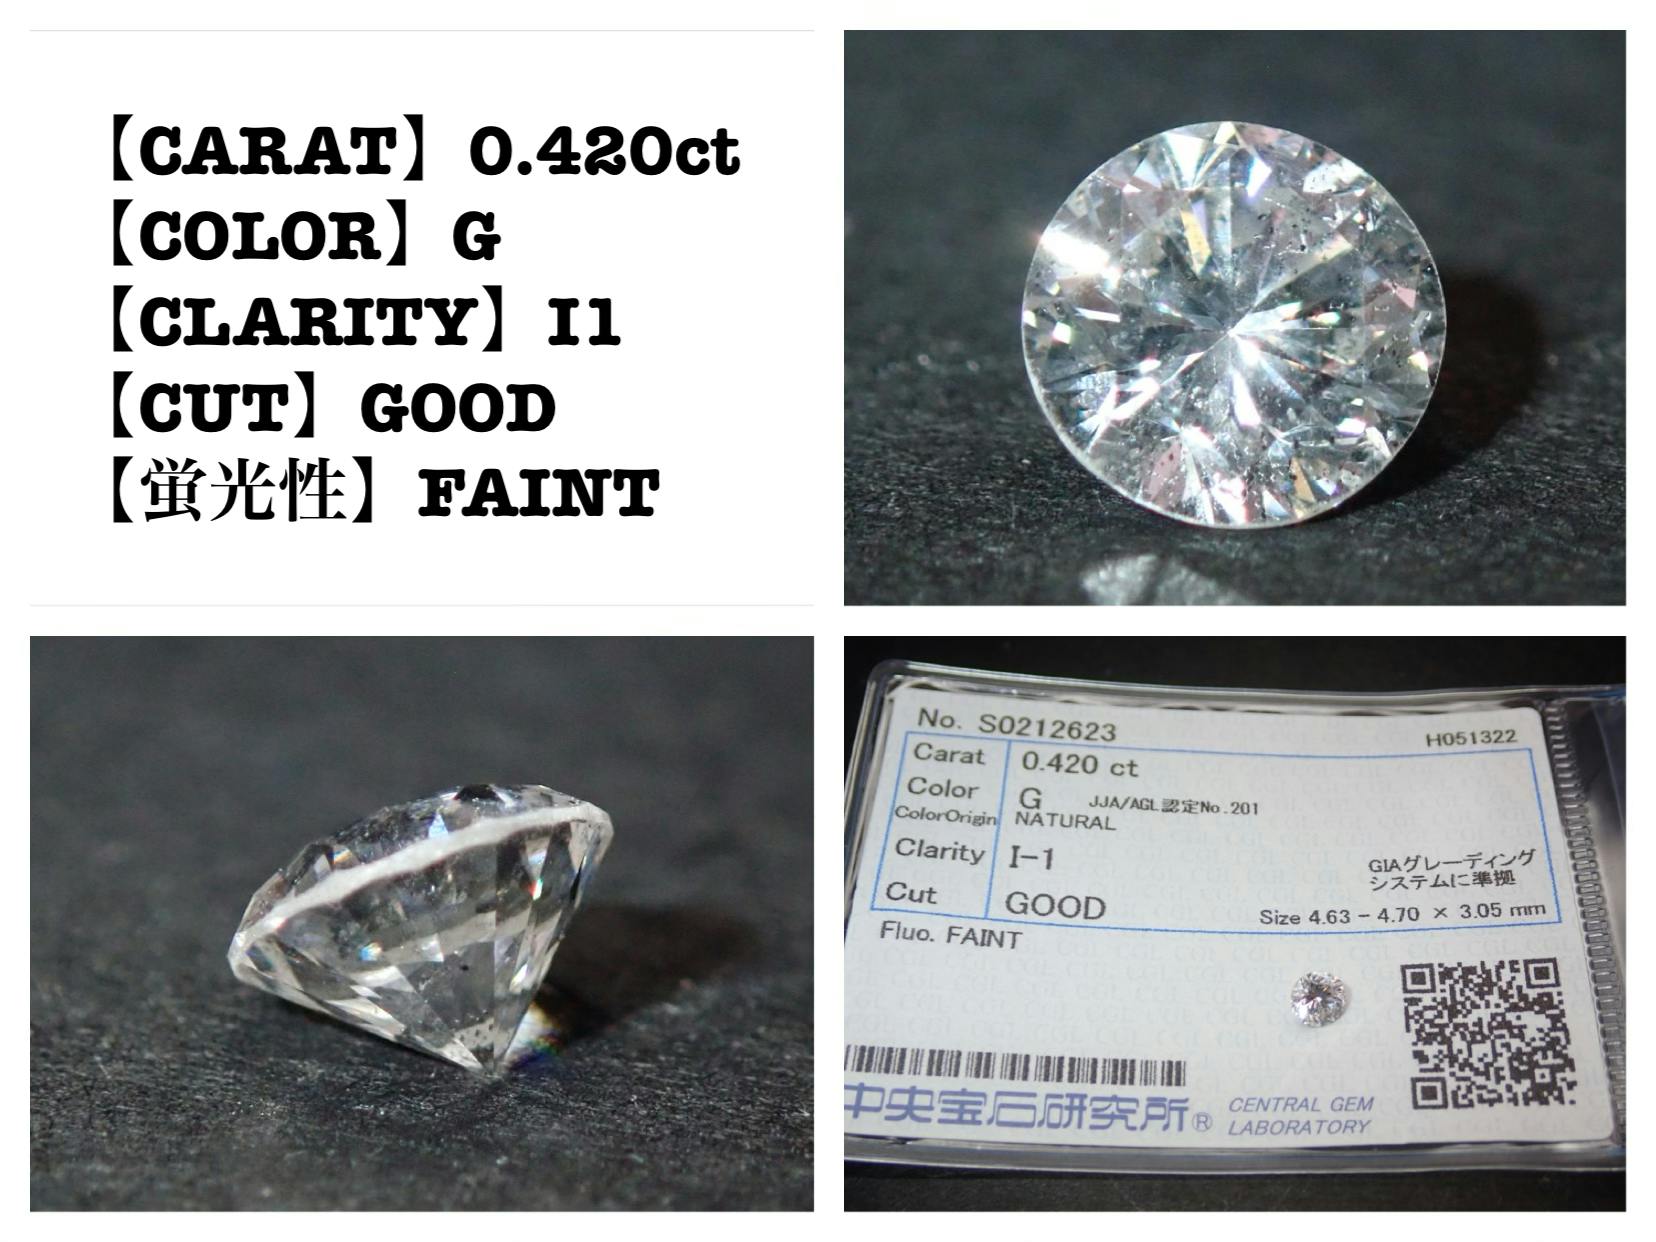 本物の輝きを届けたい〜資産価値のある天然ダイヤモンドを貴方の手に〜